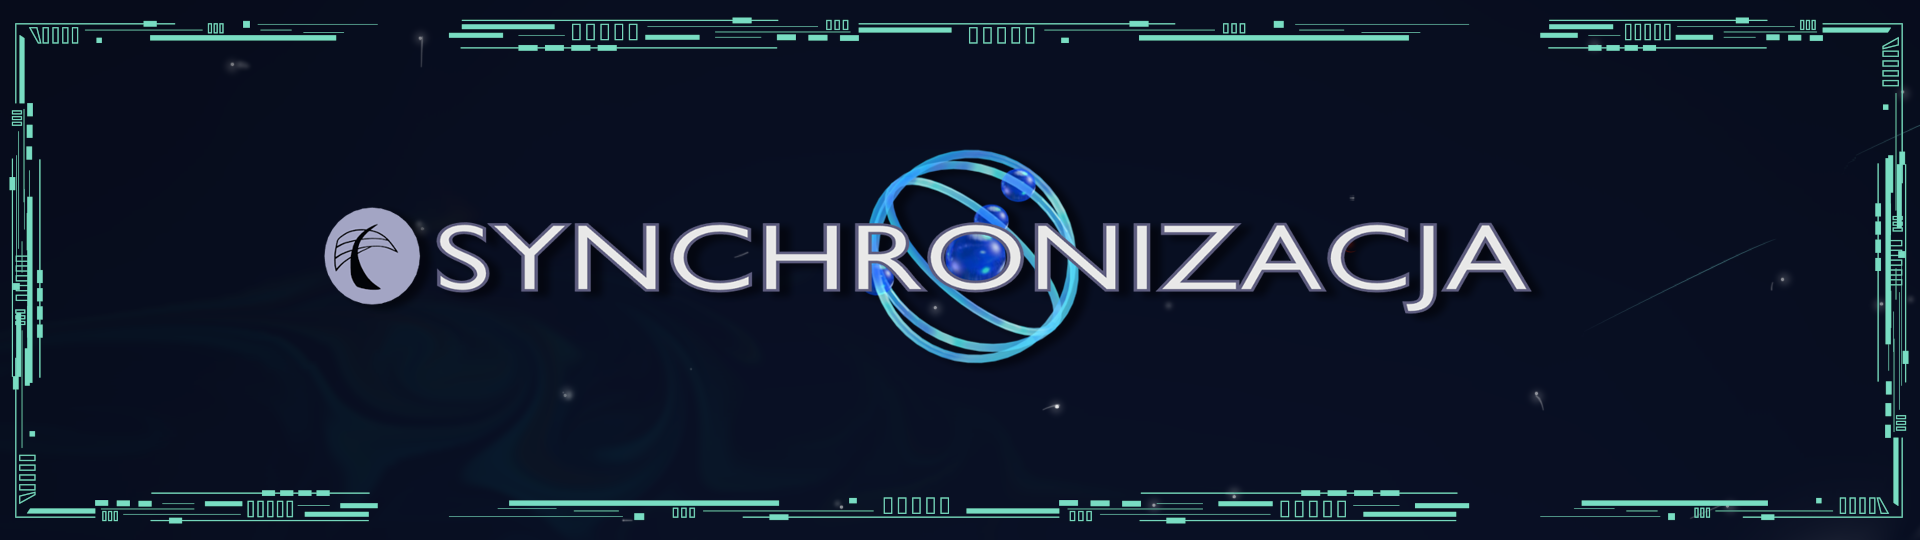 Synchronizacja - Visual Novel